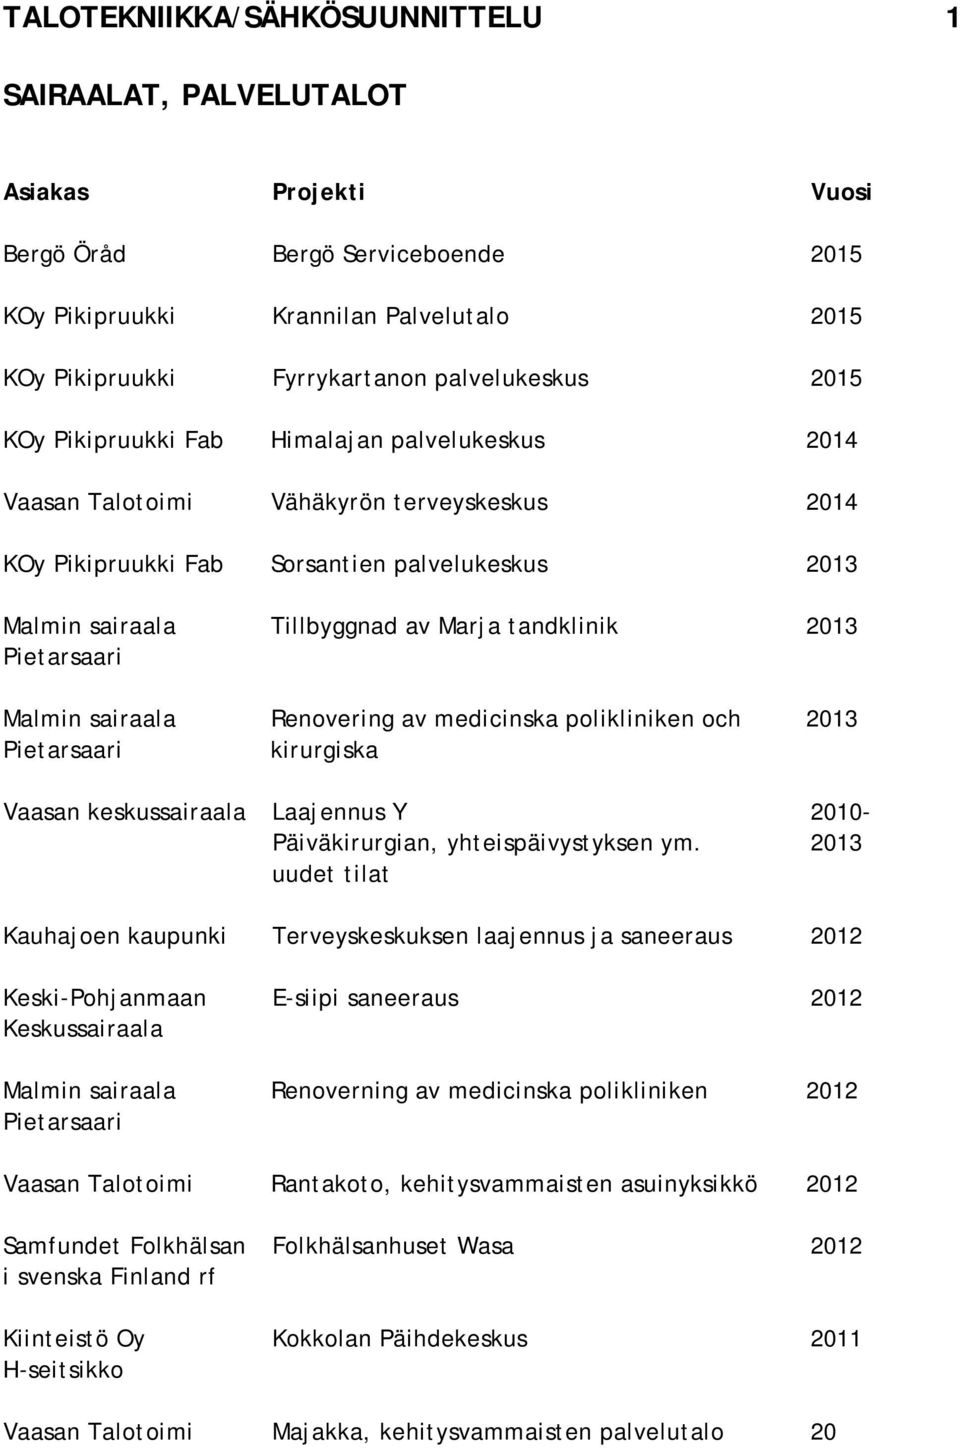 medicinska polikliniken och 2013 kirurgiska Vaasan keskussairaala Laajennus Y 2010- Päiväkirurgian, yhteispäivystyksen ym.